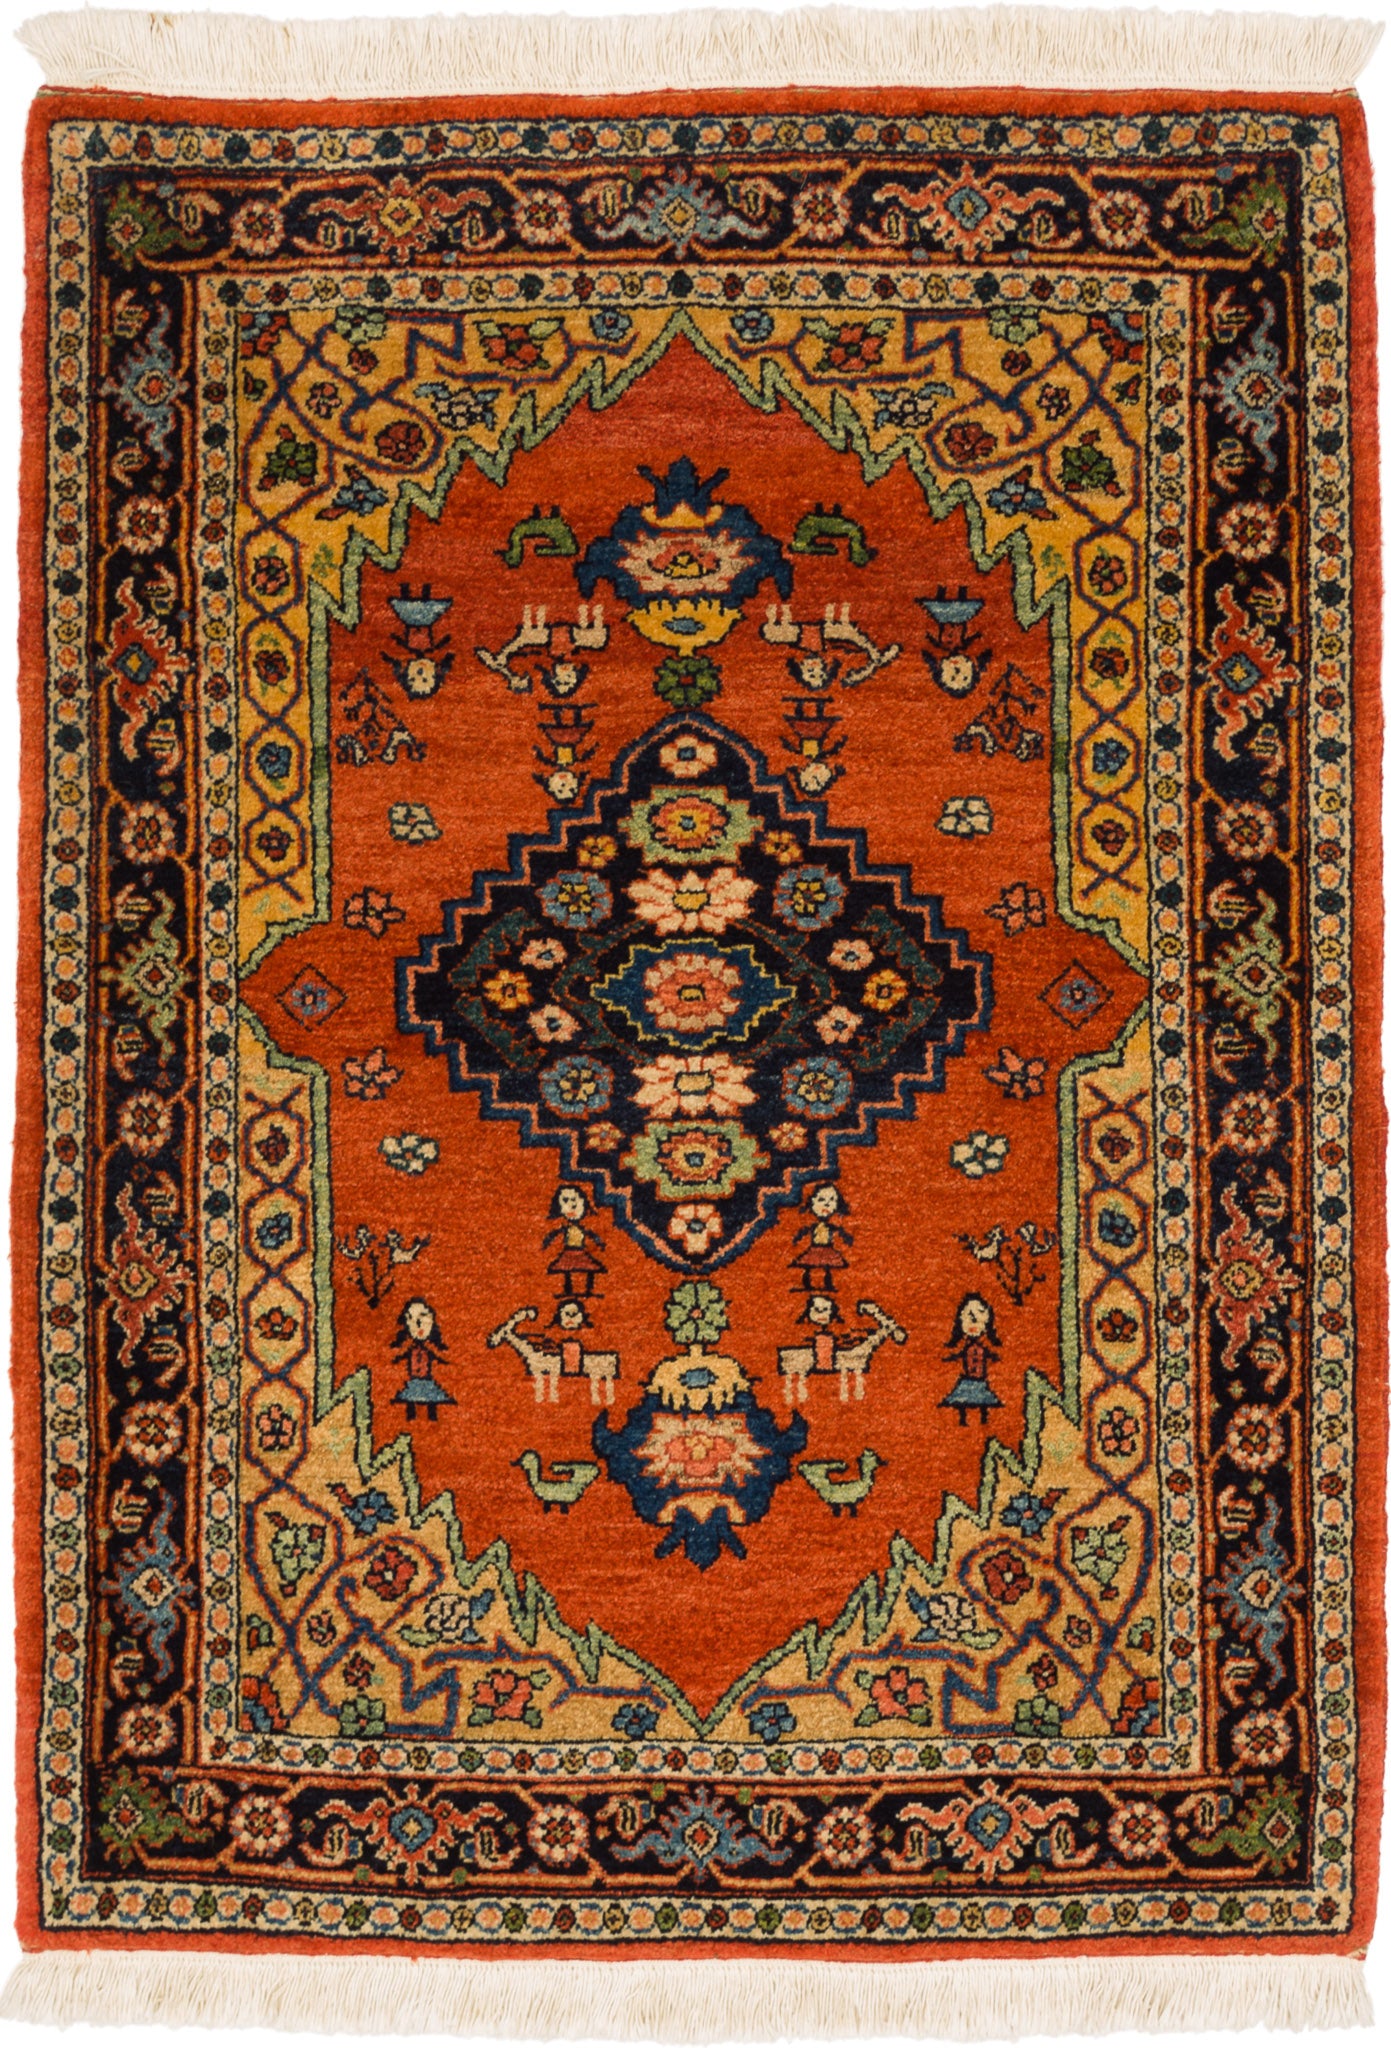 Bidjar Mirzai, 104 × 74 cm